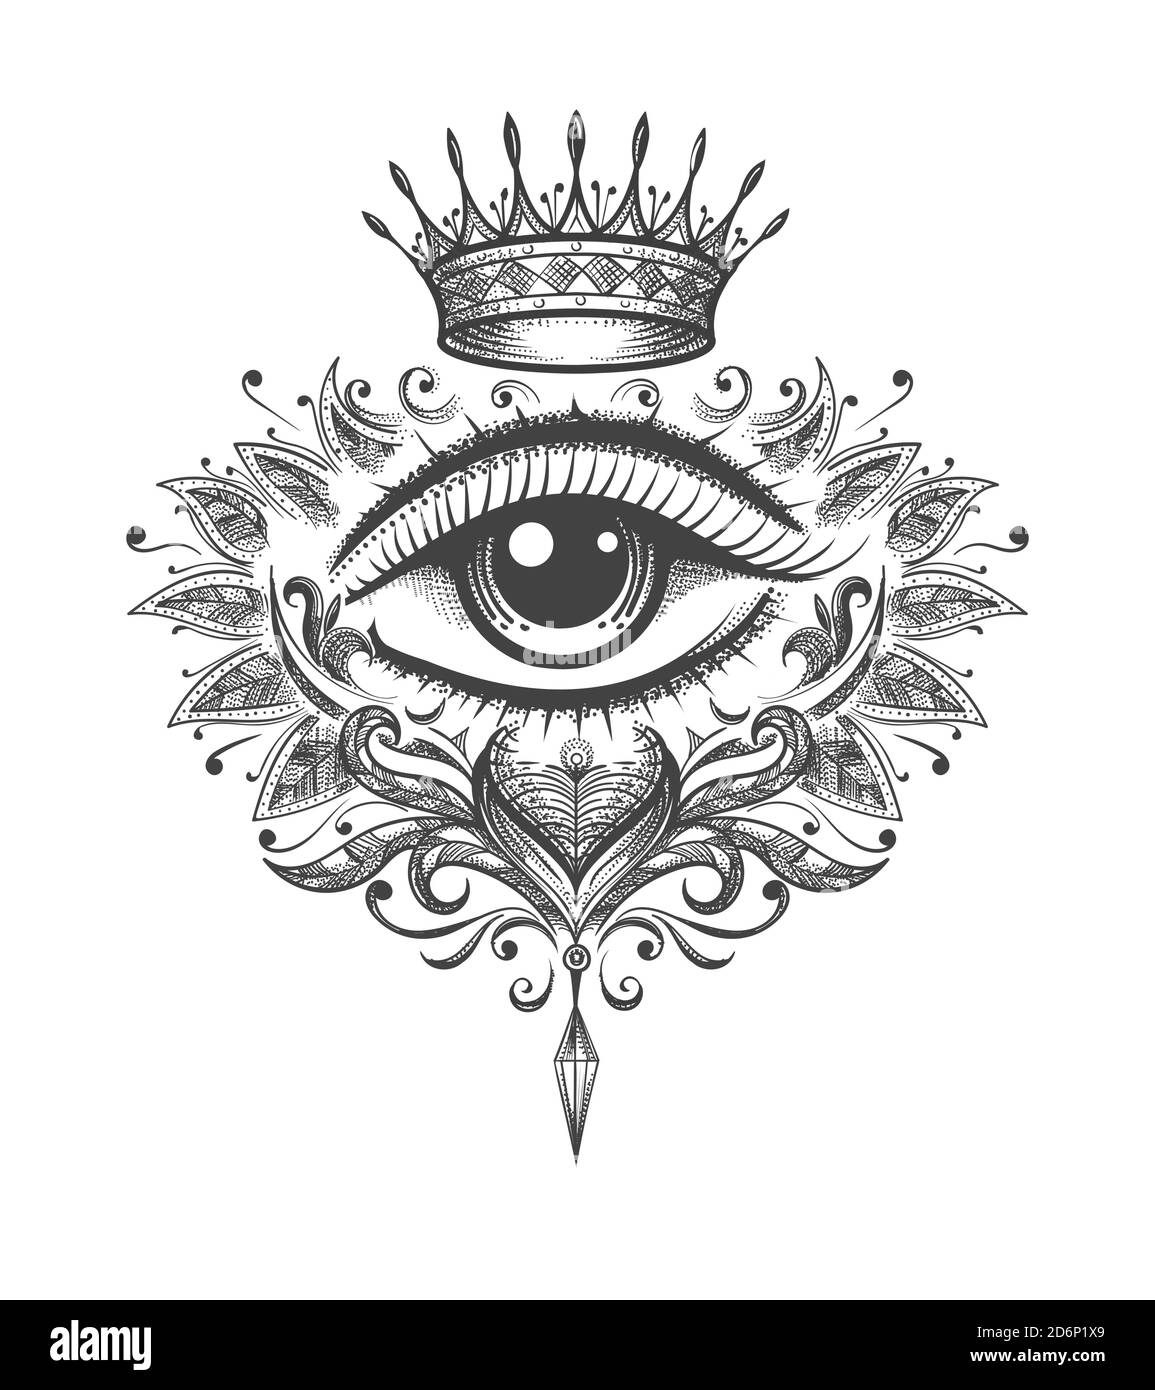 Mystische Tätowierung aller sehenden Auge mit Krone gezeichnet in Gravur Stil. Vektorgrafik. Stock Vektor